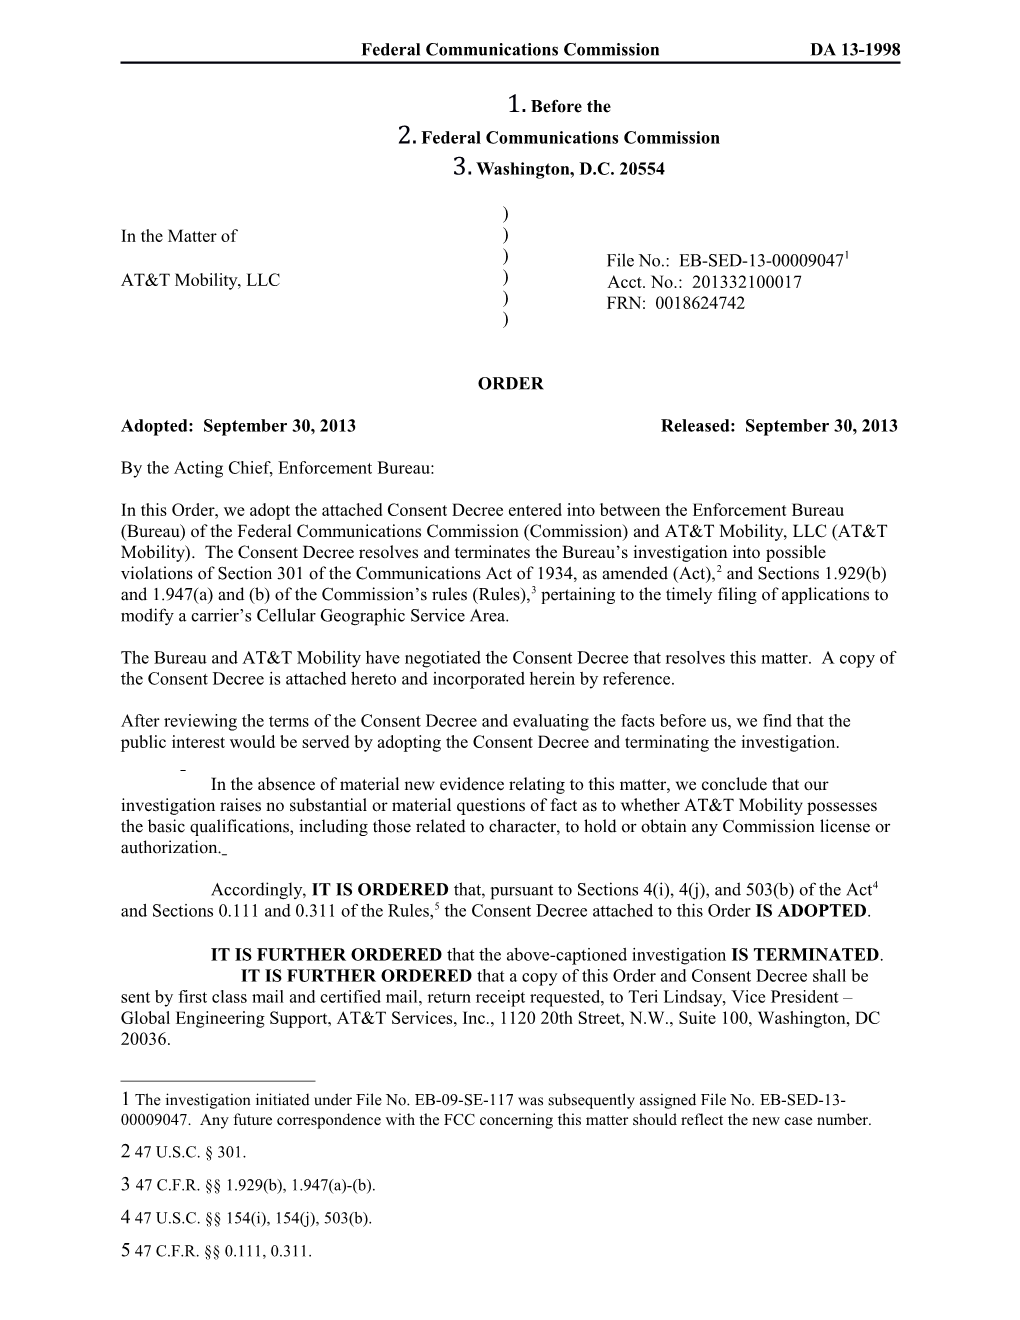 Federal Communications Commission DA 13-1998